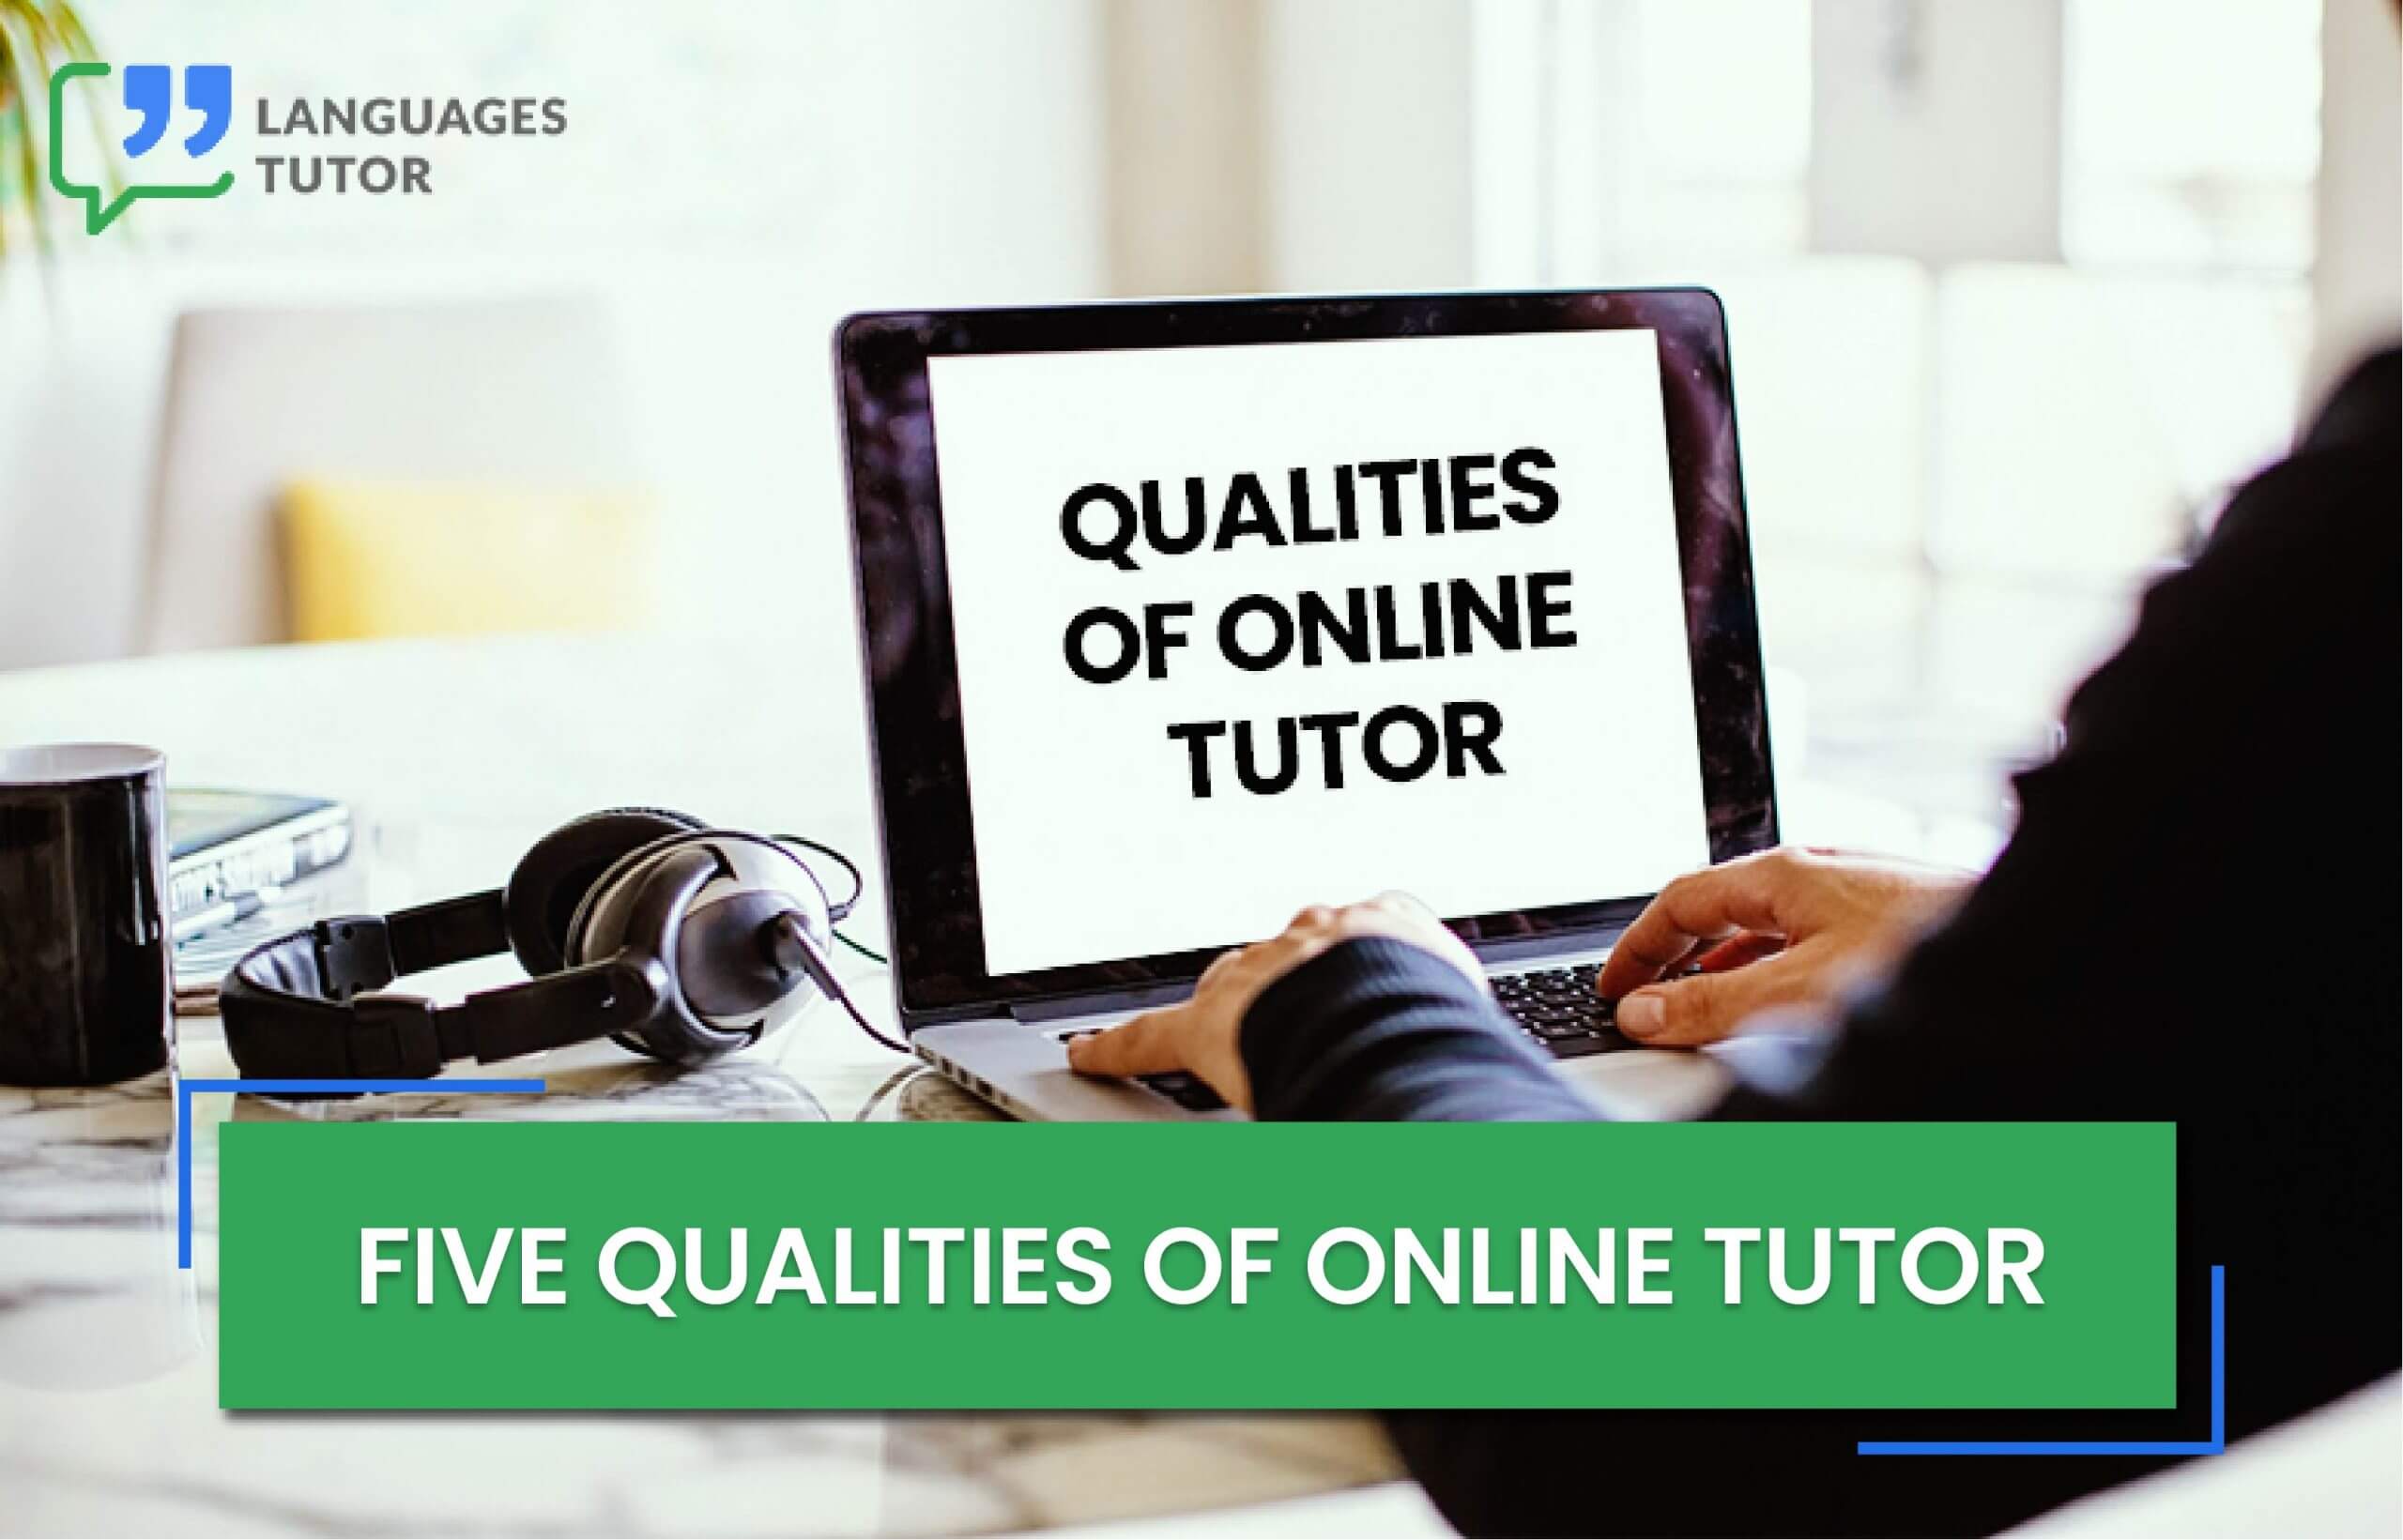 Five qualities of online tutor